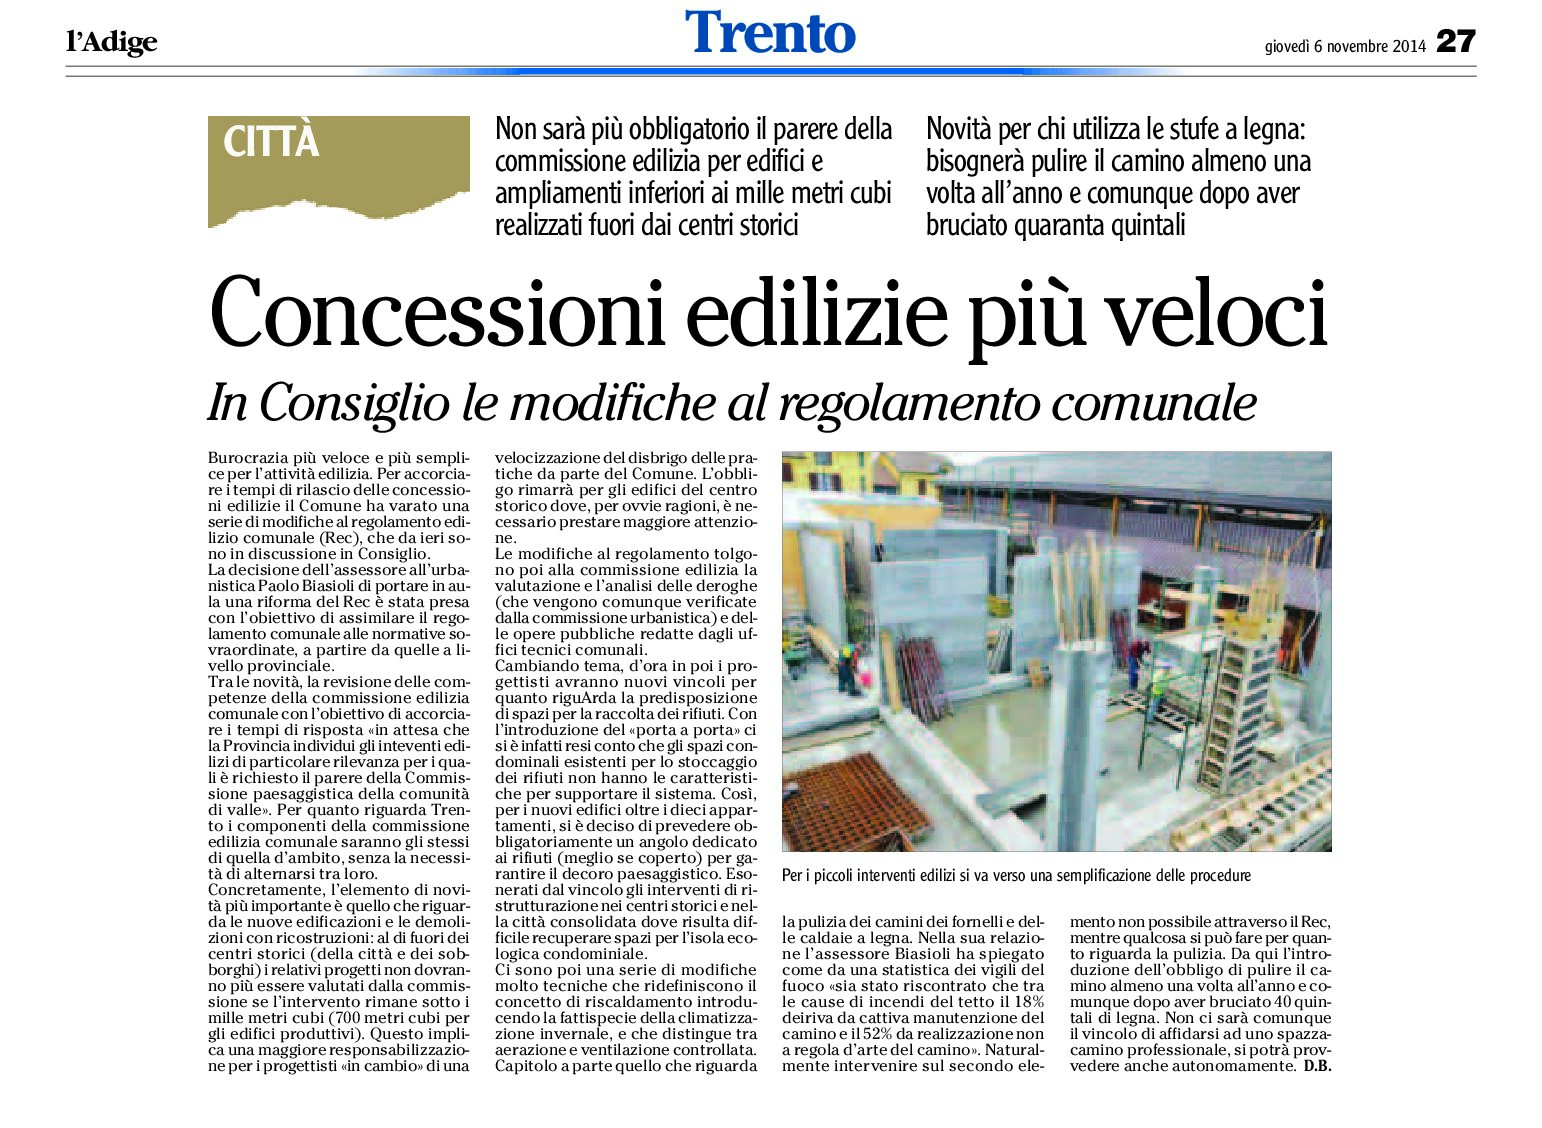 Trento: concessioni edilizie più veloci